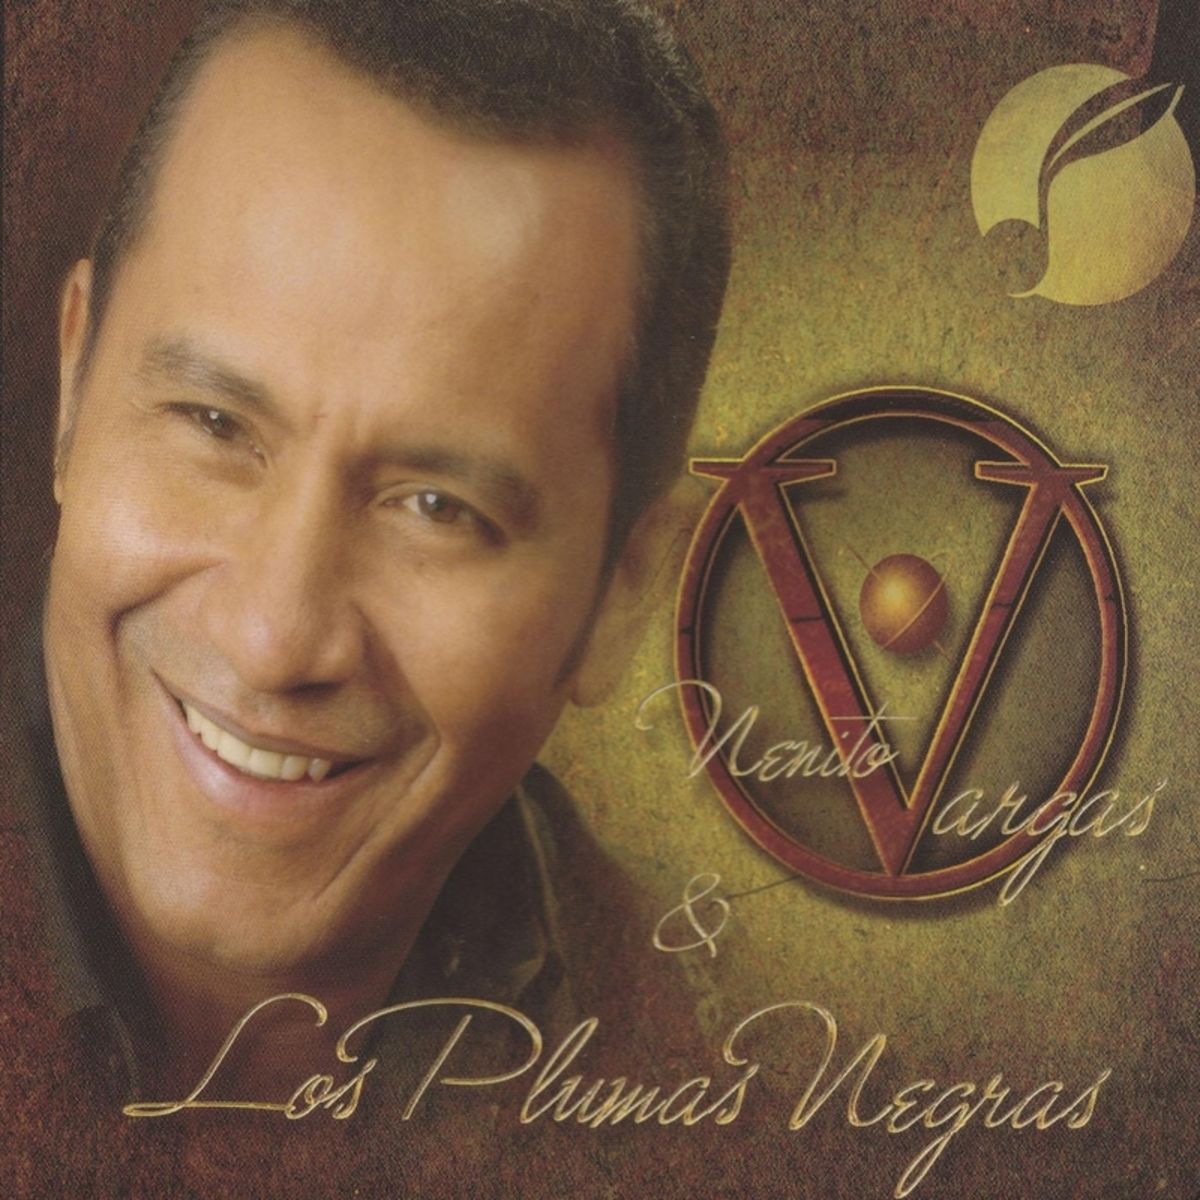 3 - Nenito Vargas y los Plumas Negras - Me Faltas Tu.mp3